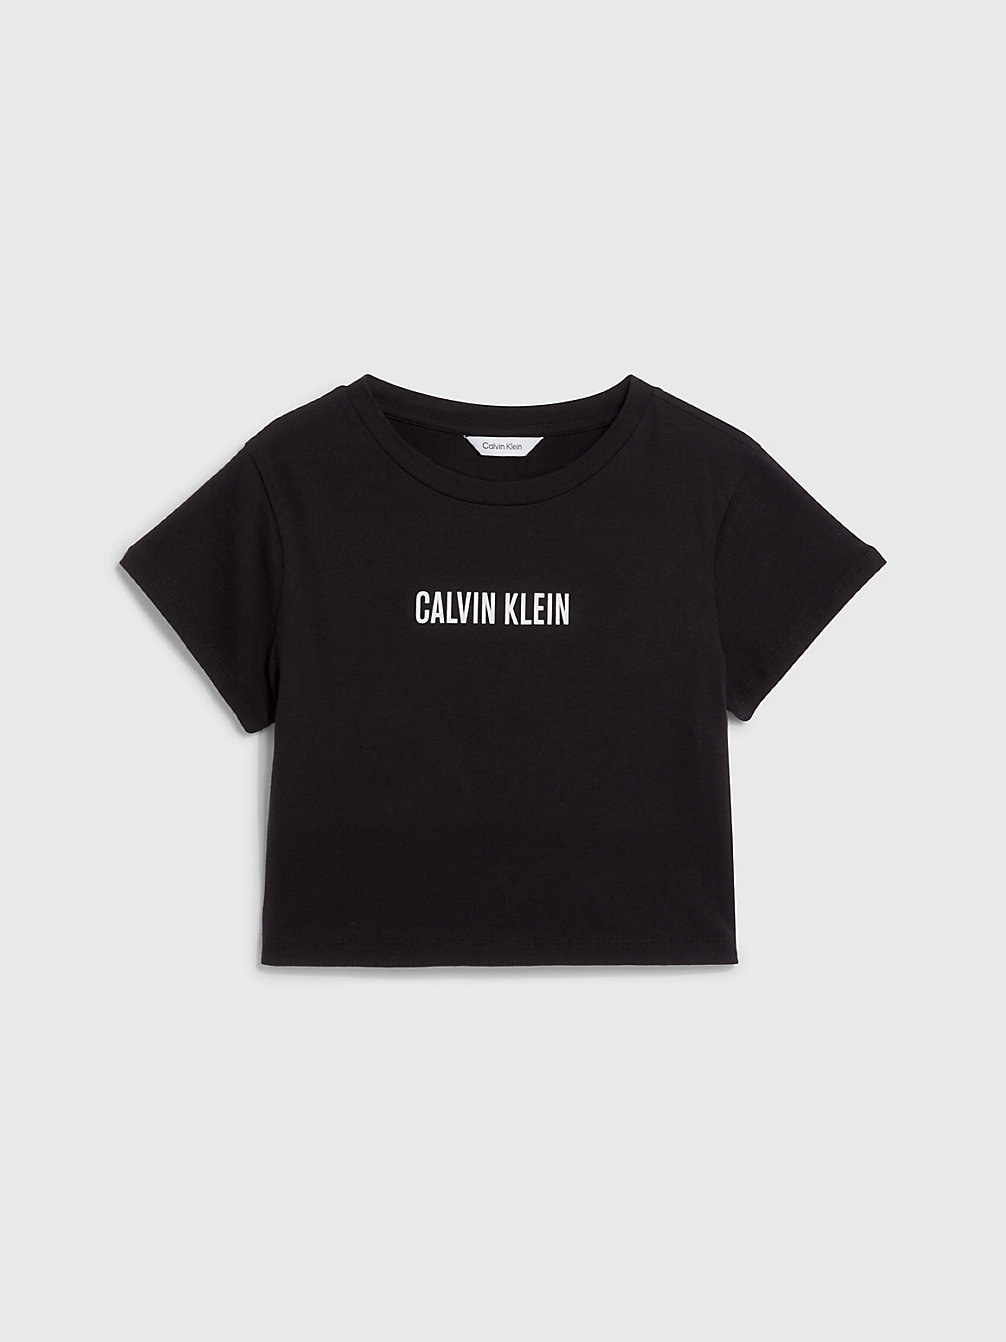 PVH BLACK T-Shirt De Plage Court Pour Fille - Intense Power undefined girls Calvin Klein